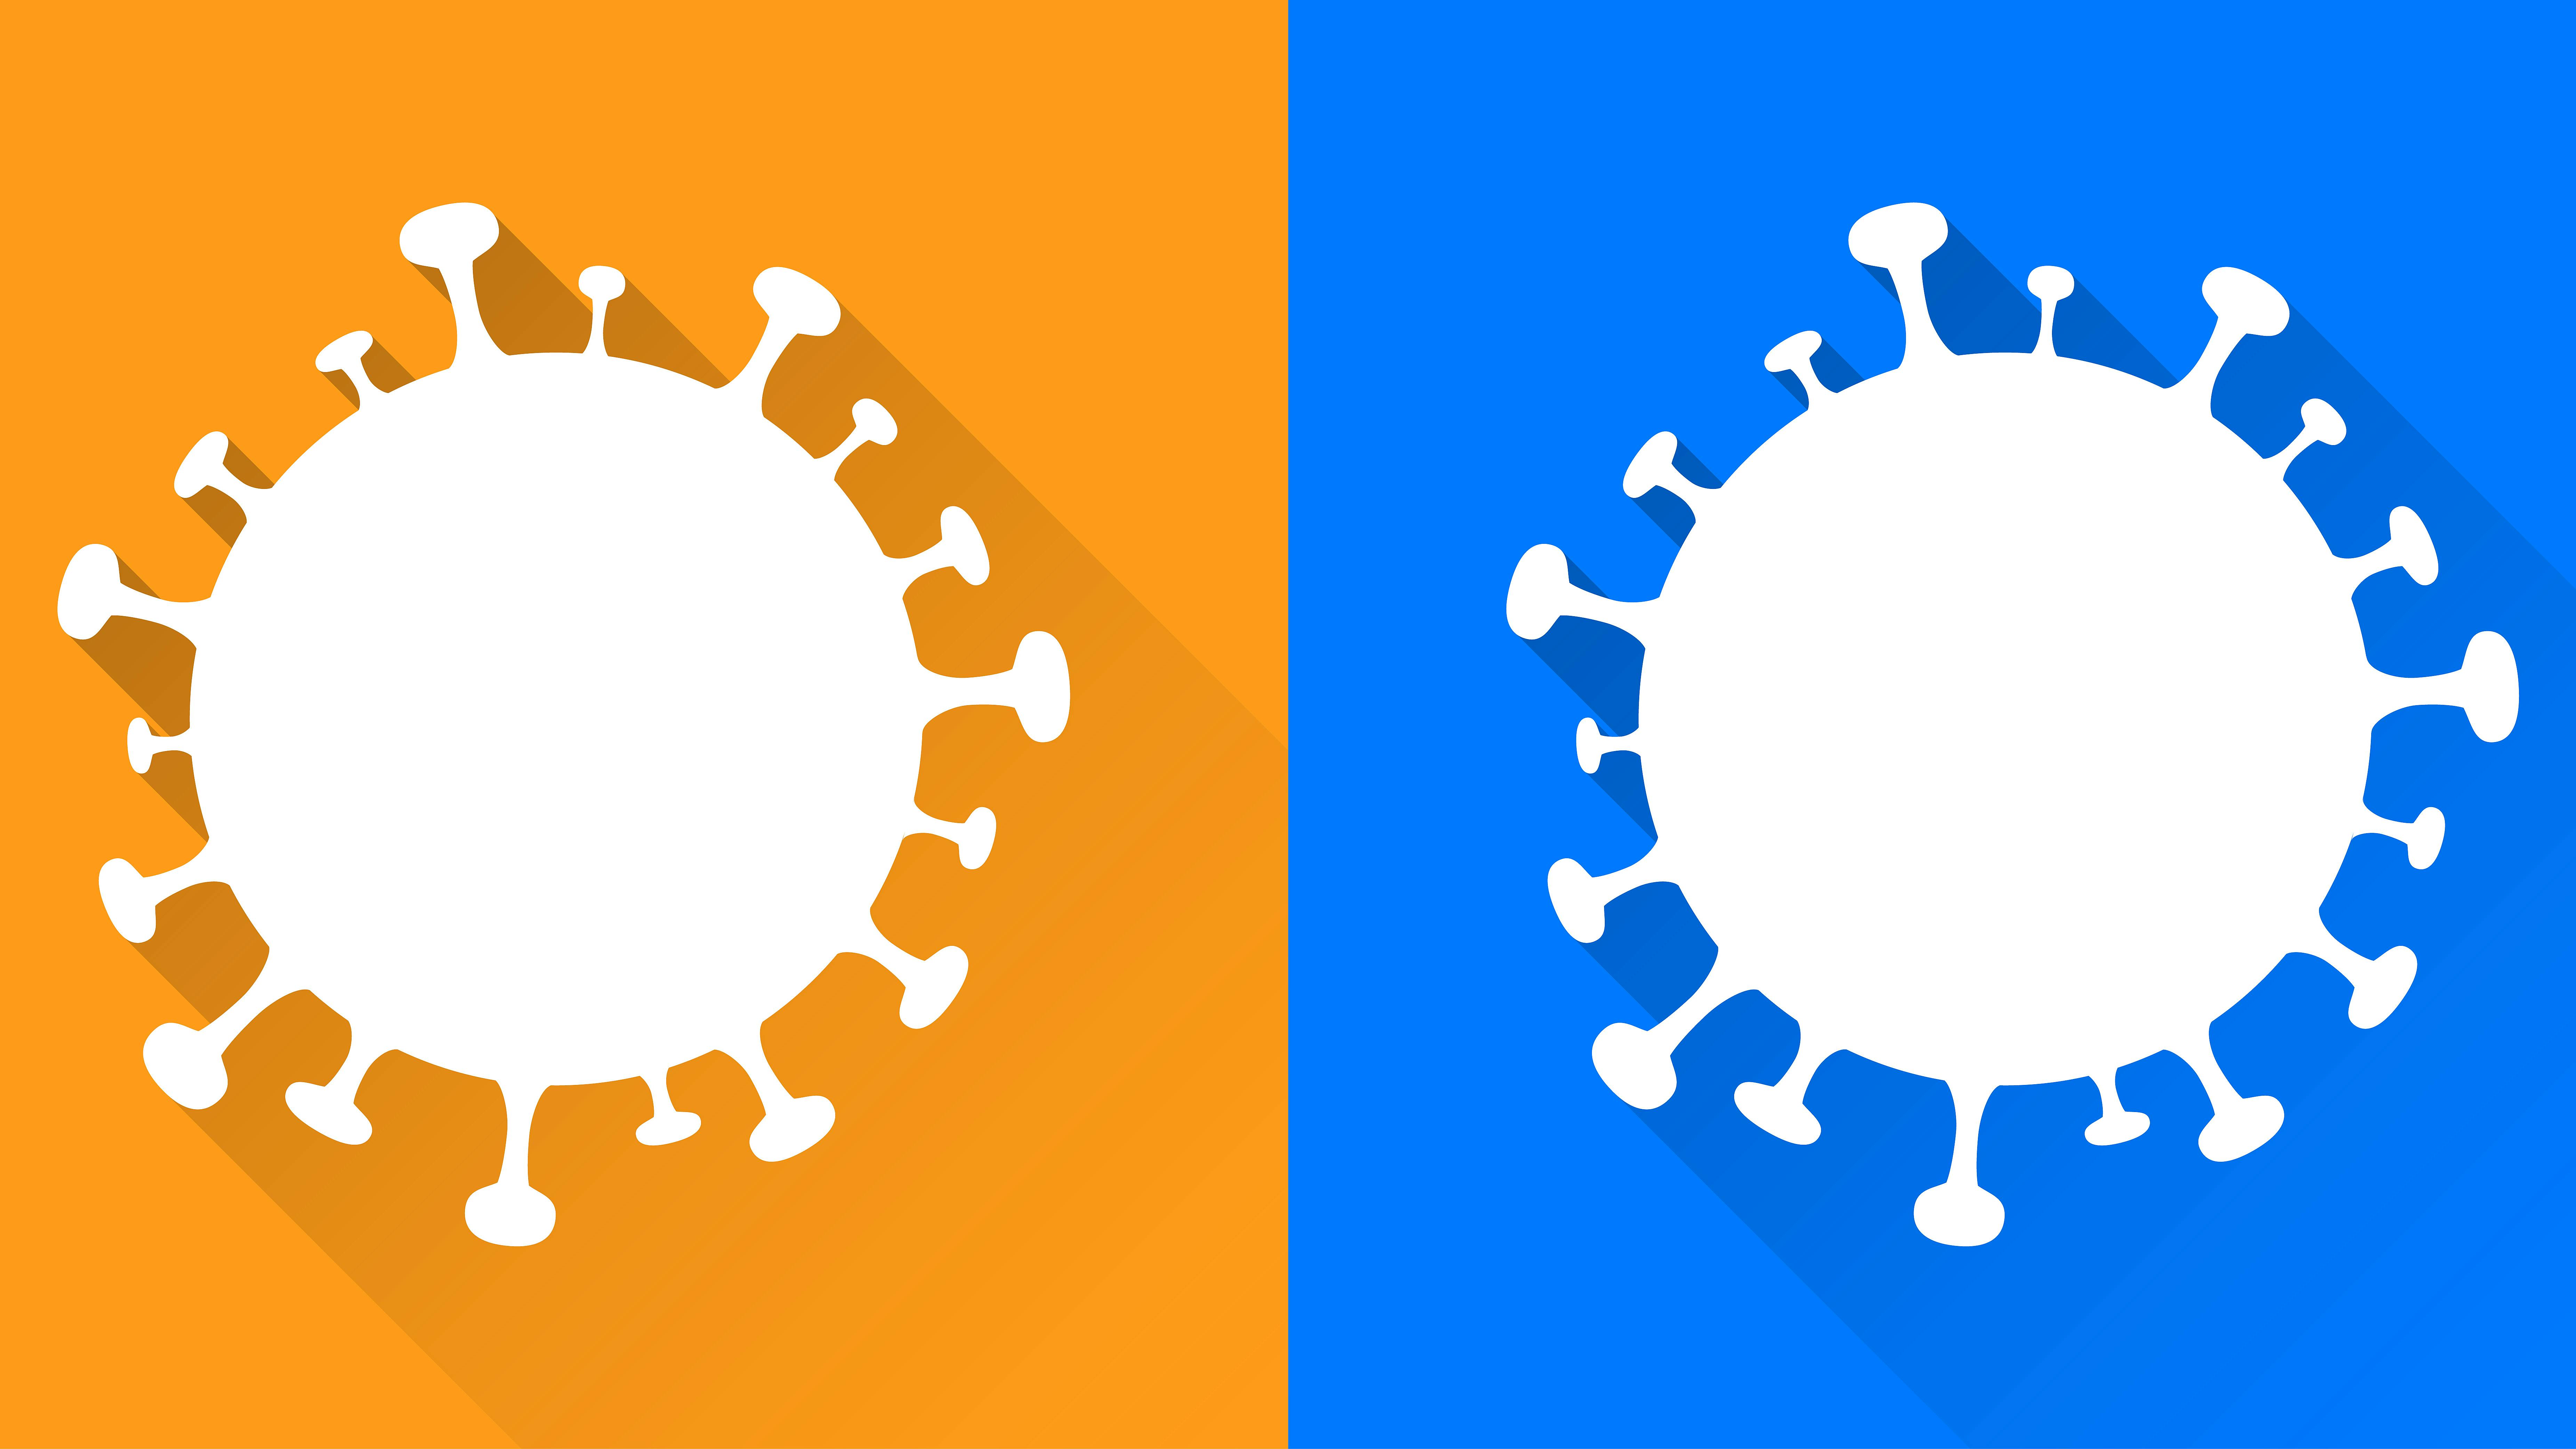 Wir sehen zwei stilisierte Viren: eins vor einem orangenen Hintergrund, eines vor einem blauen Hintergrund